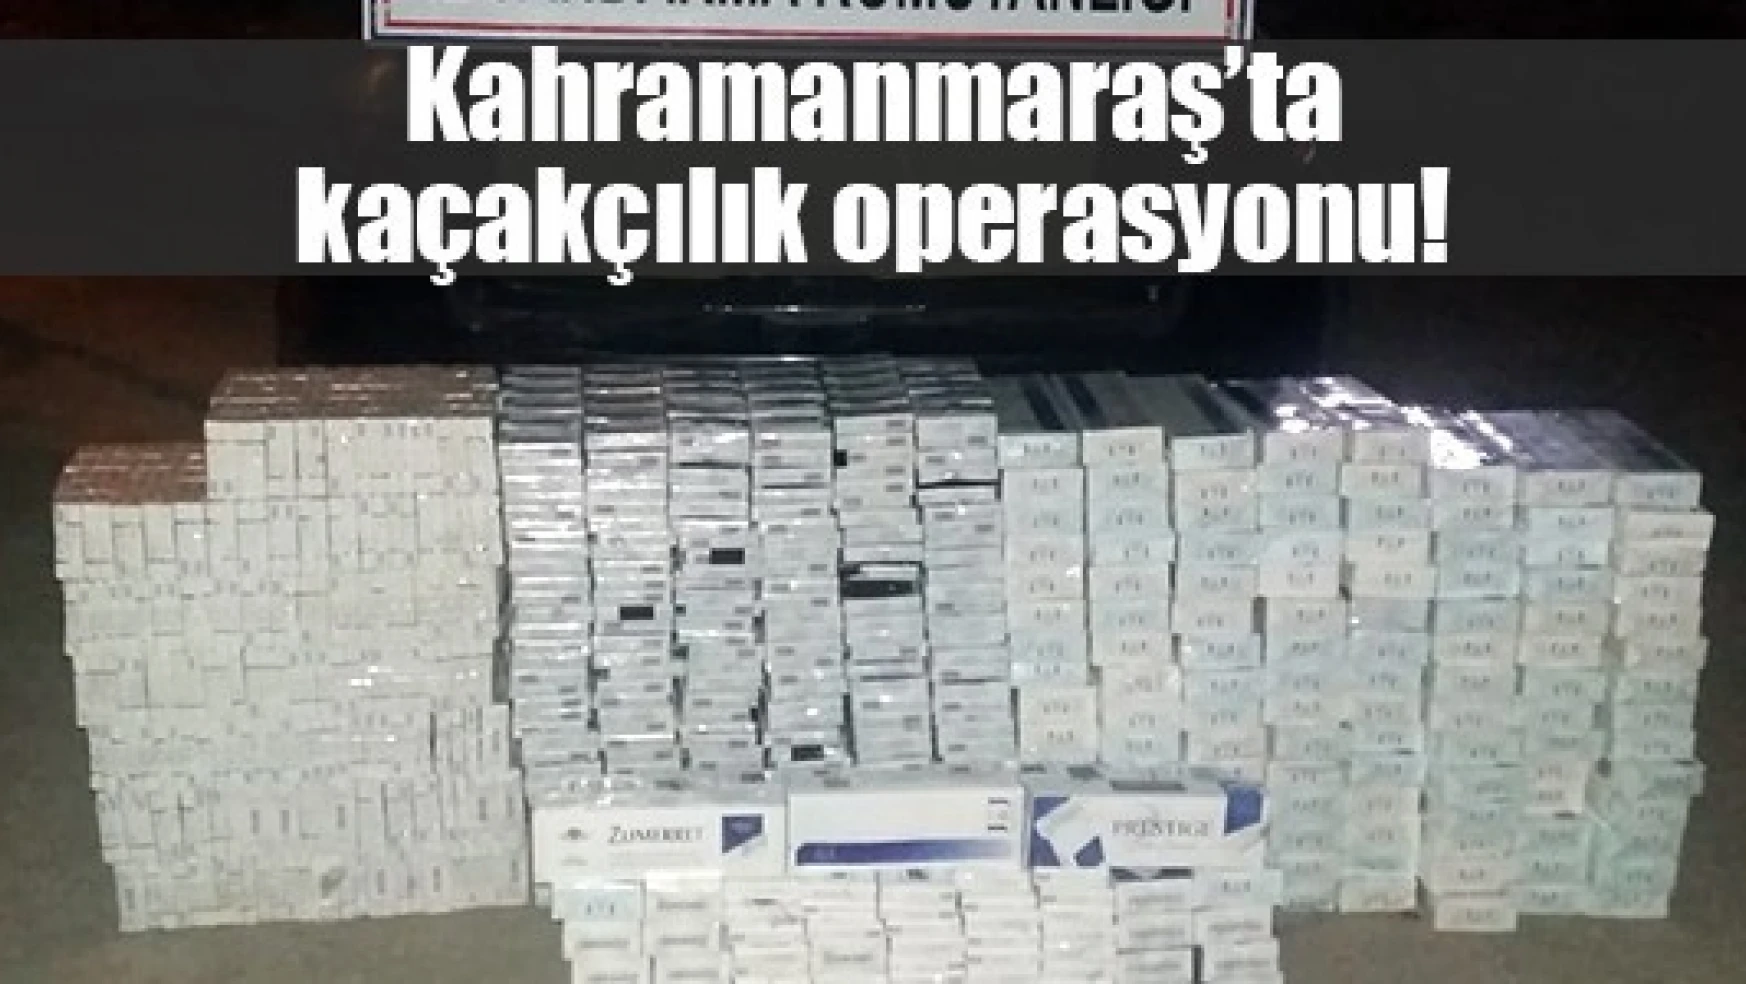 Kahramanmaraş'ta kaçakçılık operasyonu!